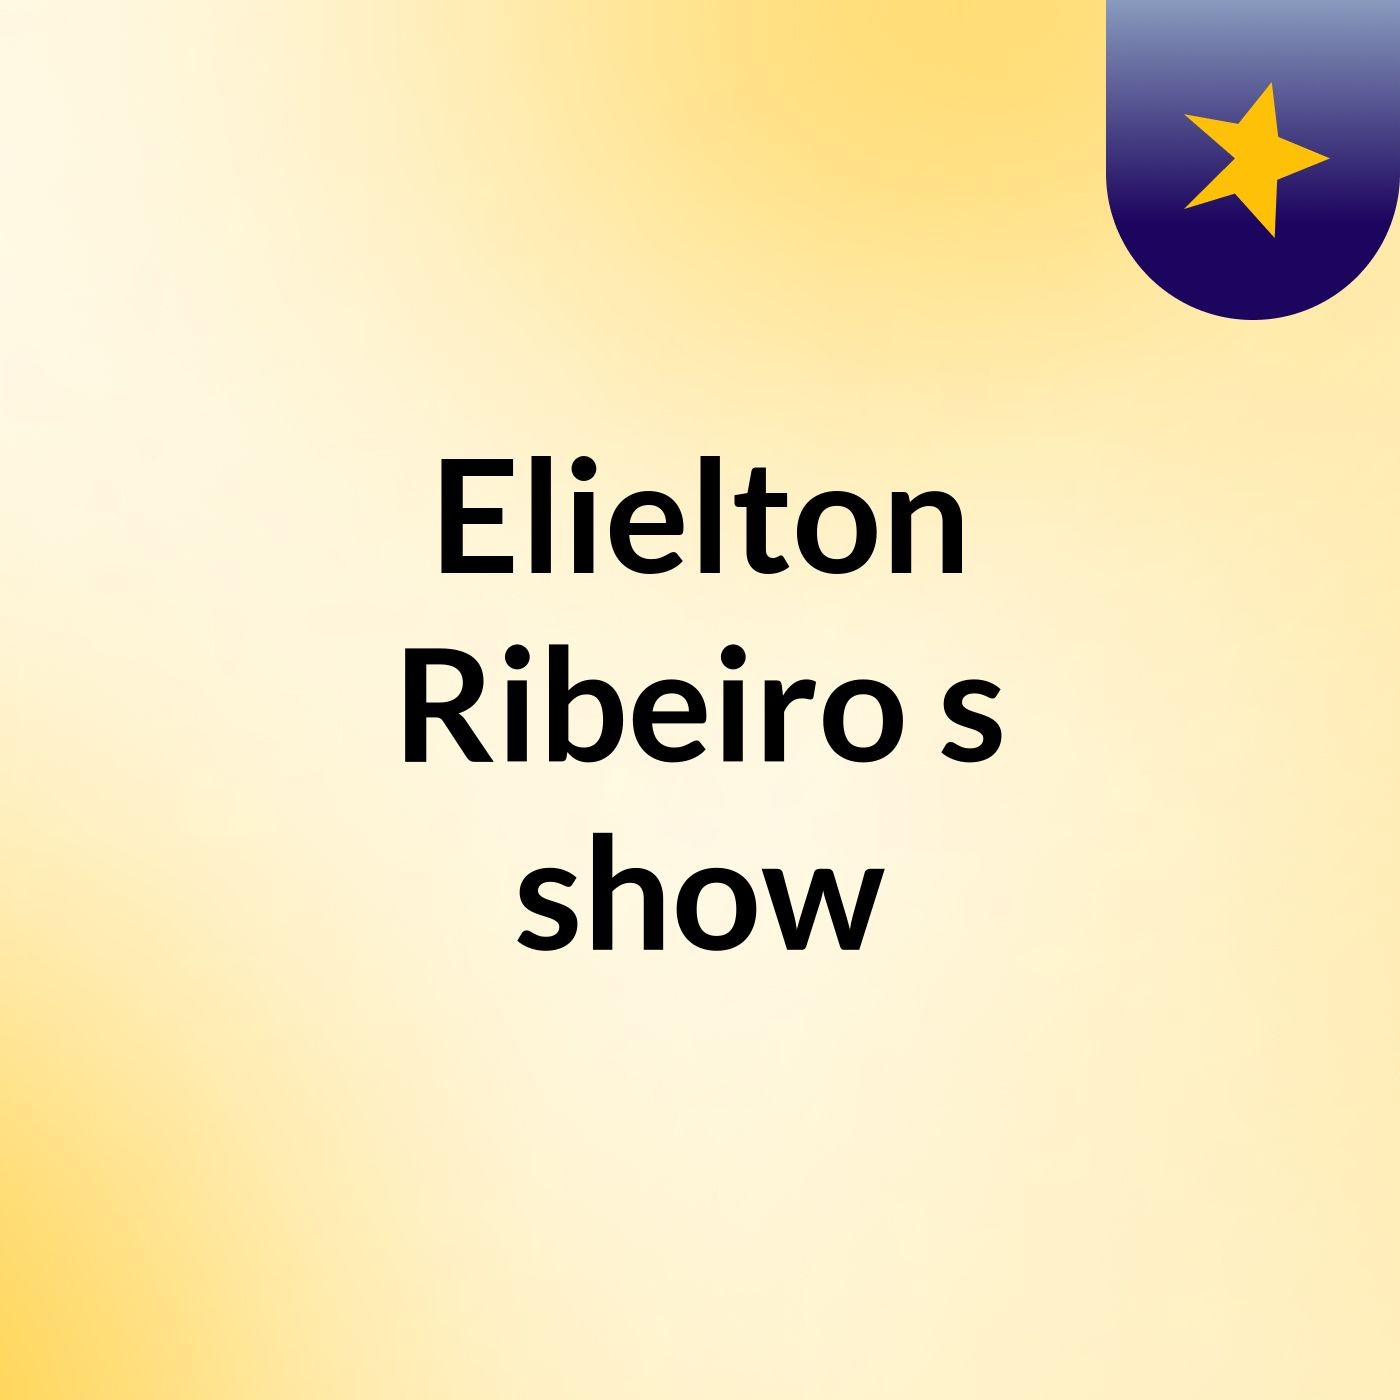 Elielton Ribeiro's show